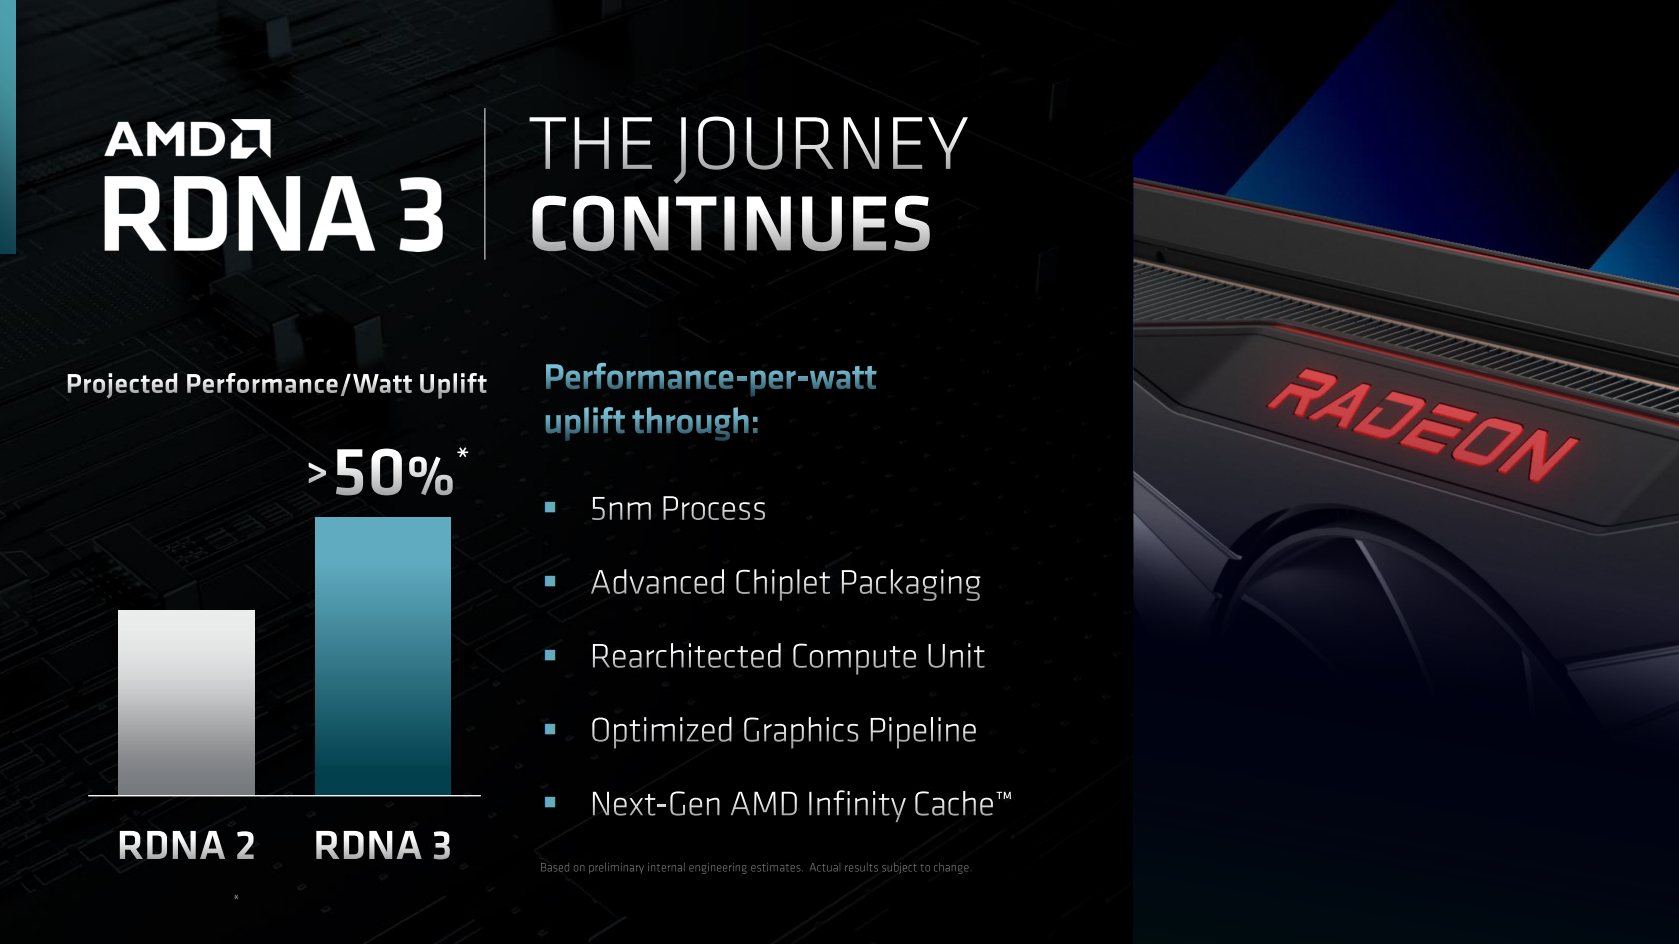 AMD RDNA 3 details